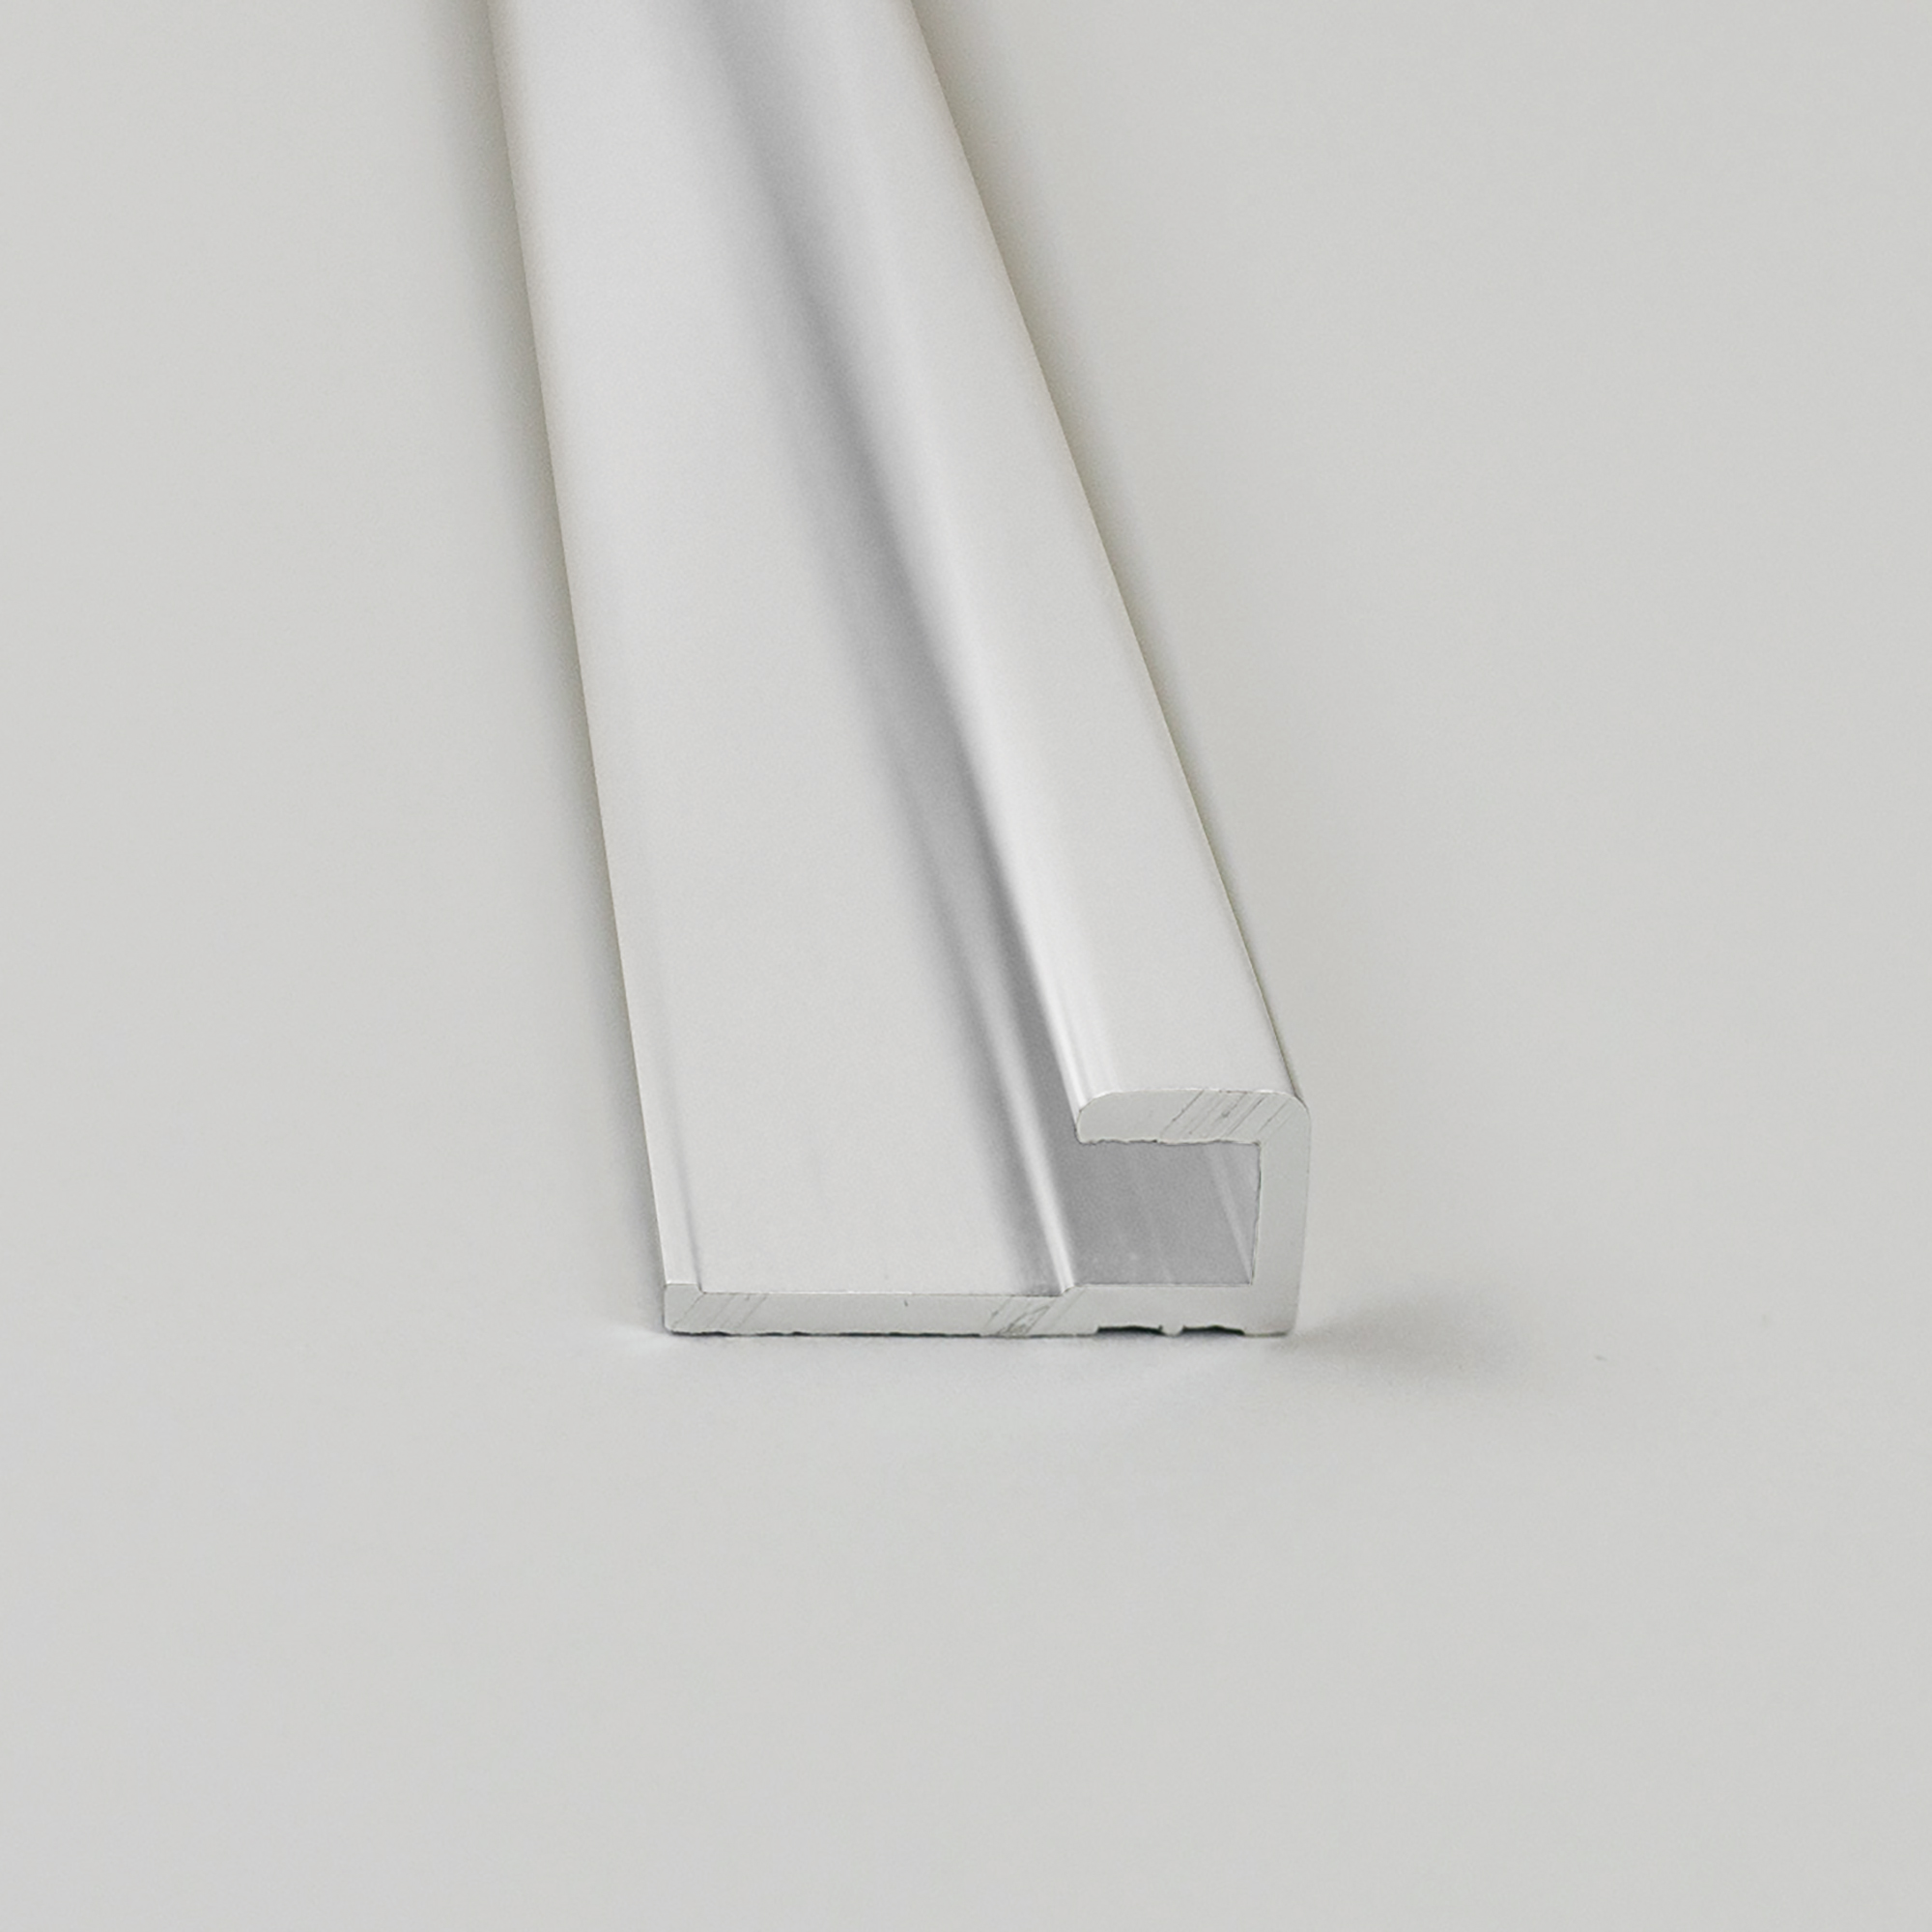 Abschlussprofil für Rückwandplatten, eckig, weiß, 2100 mm + product picture